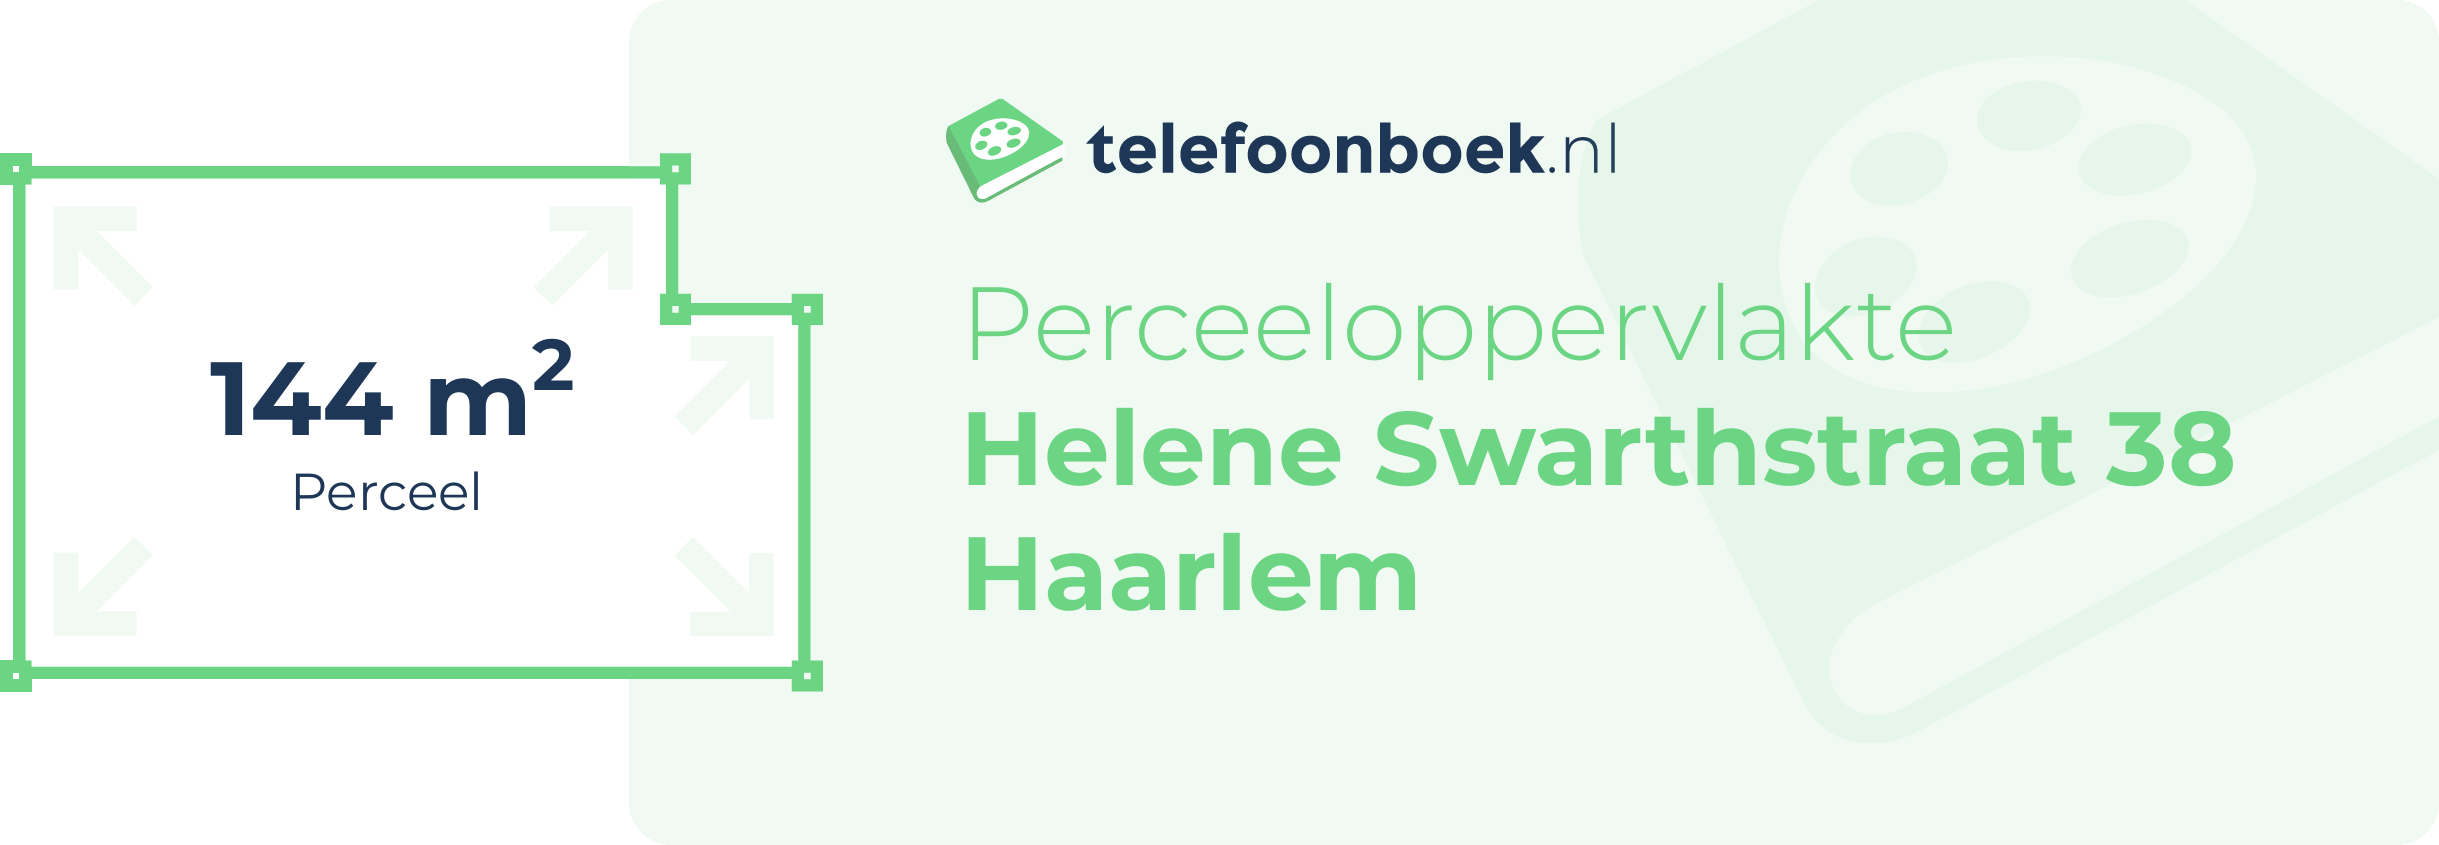 Perceeloppervlakte Helene Swarthstraat 38 Haarlem